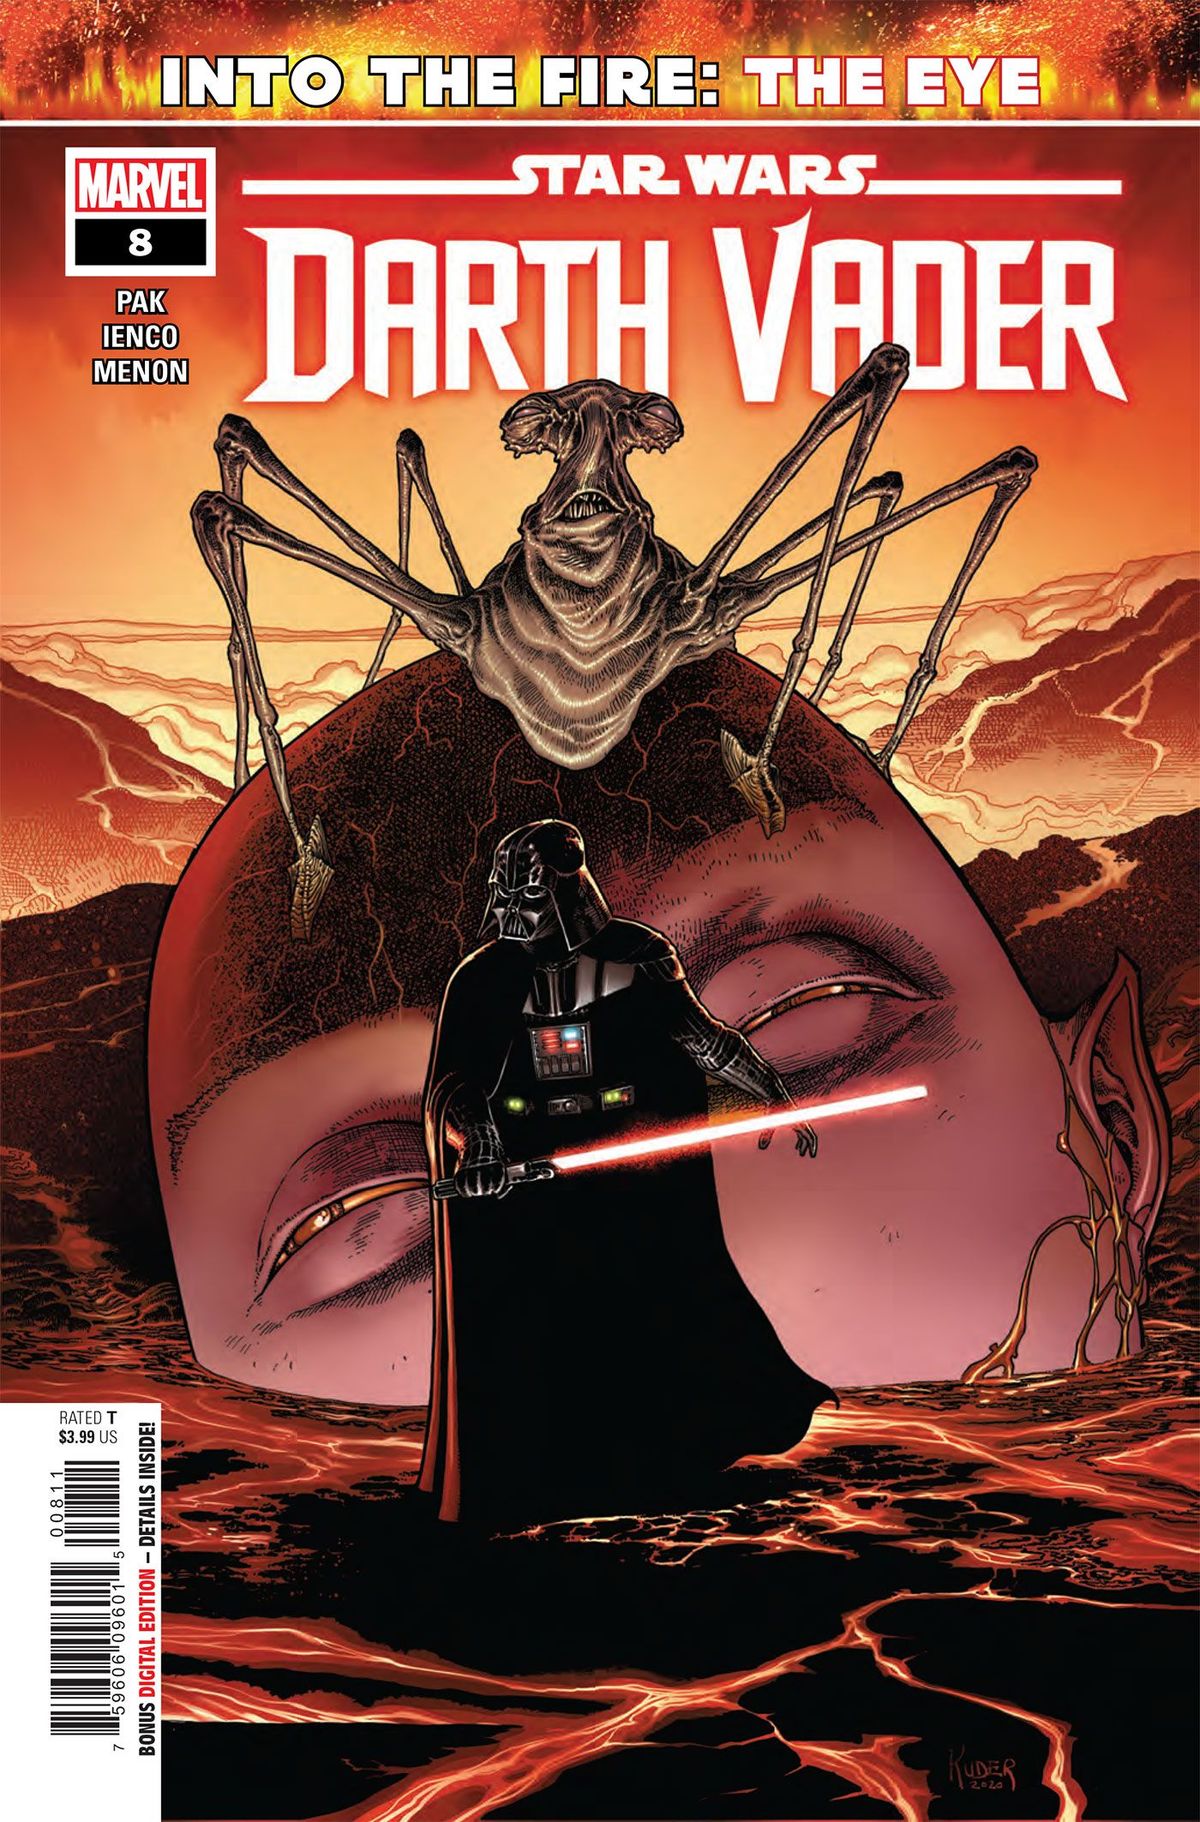 ELŐZET: Csillagok háborúja: Darth Vader # 8